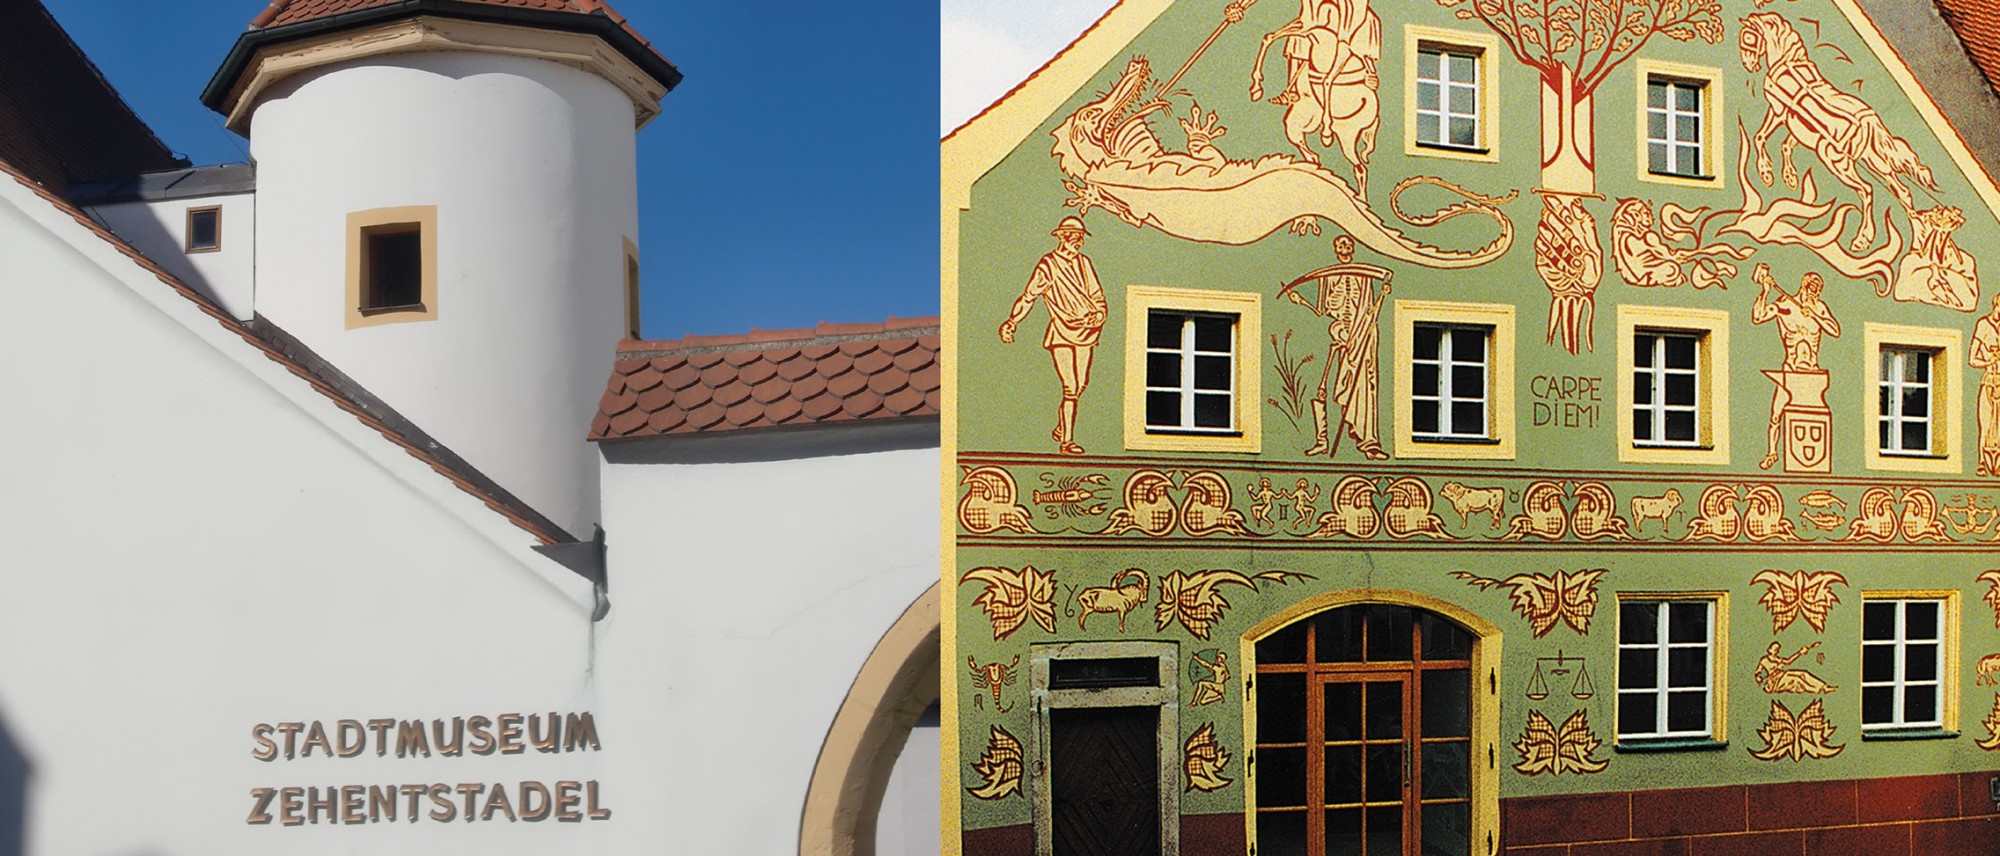 Zwei Fotos sind gegenübergestellt und zeigen links einen Ausschnitt des Stadtmuseums Zehentstadel mit Turm und Ostansicht sowie rechts die Fassade des Schmidt-Hauses.